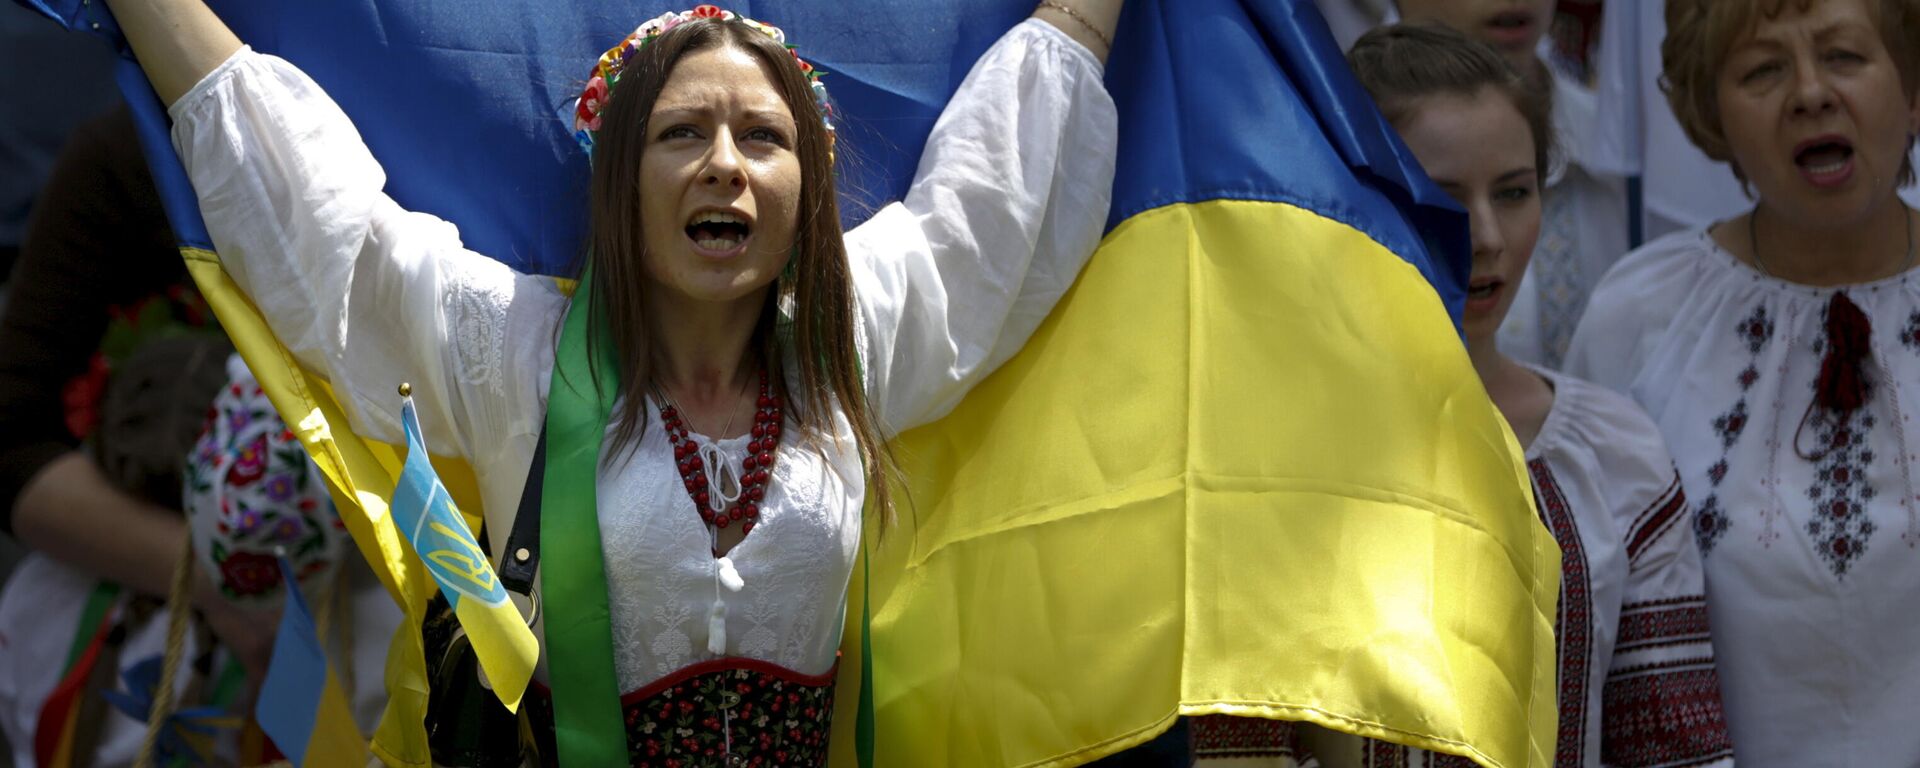 Женщина в вышиванке с украинским флагом на марше в Киеве, Украина - Sputnik Узбекистан, 1920, 23.08.2021